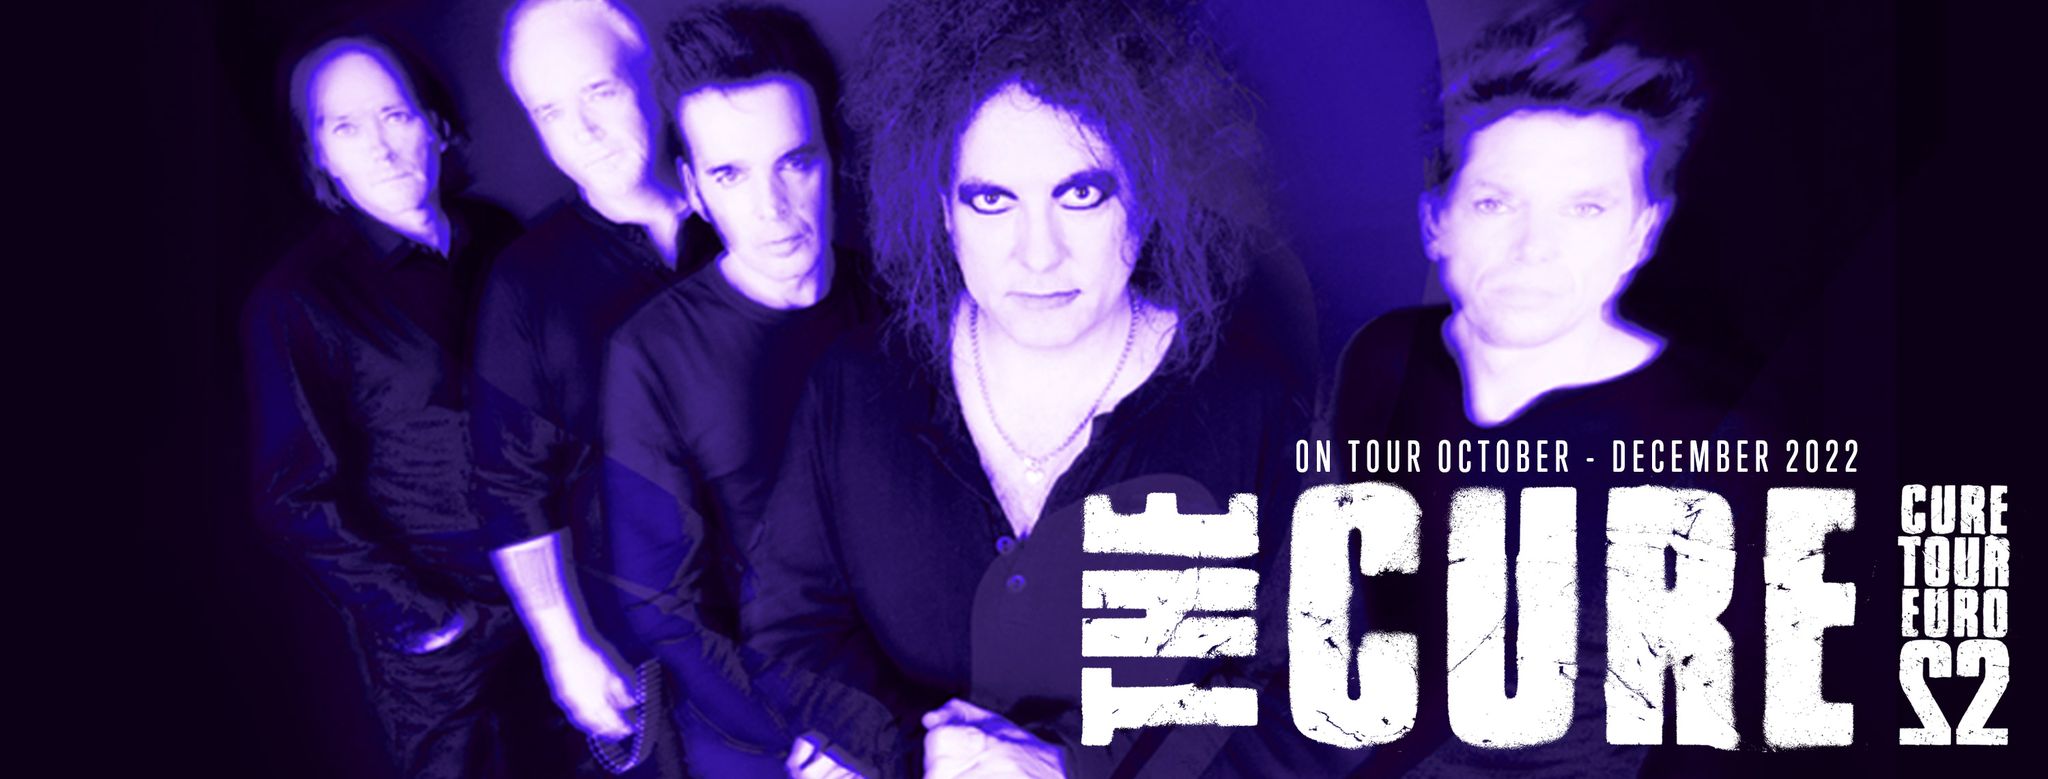 The Cure en concert à la Lyon à la Halle Tony Garnier le 7 novembre 2022